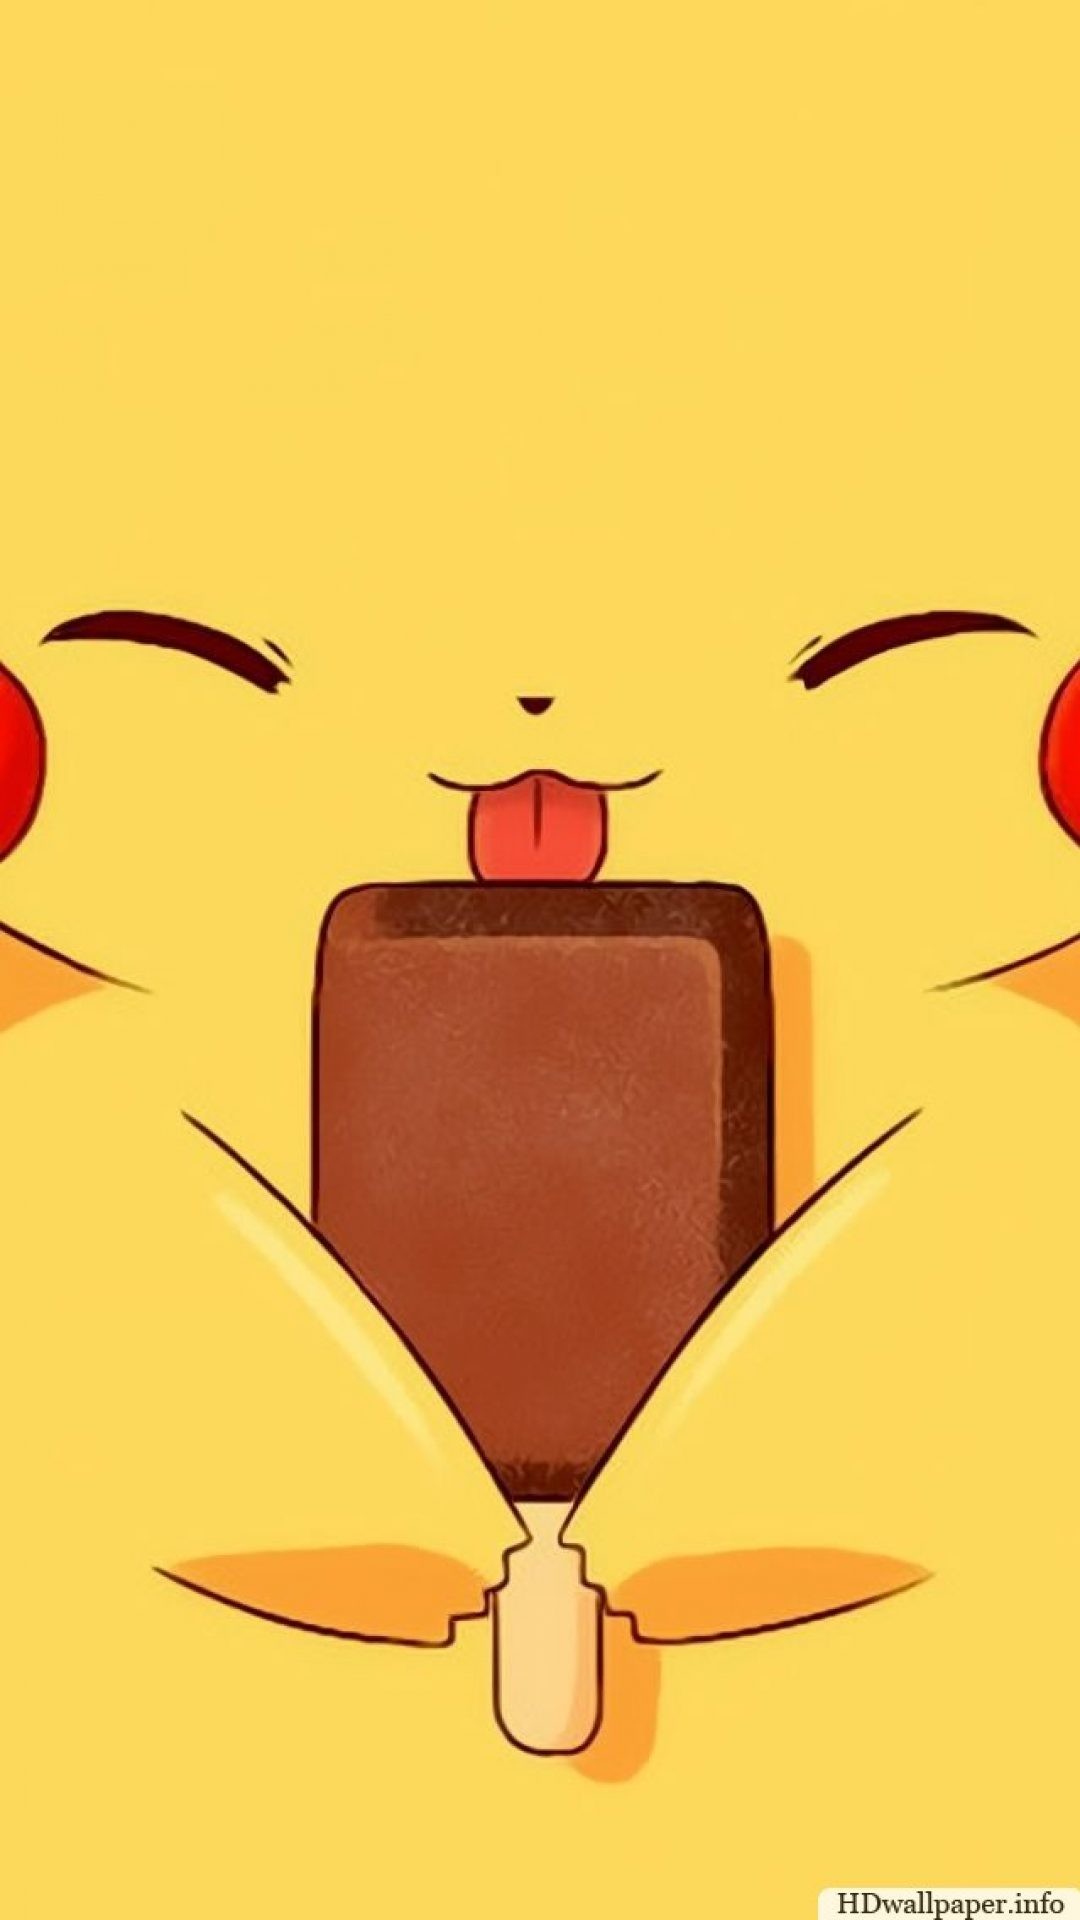 Download Pikachu Wallpaper x px High Resolution Wallpapers For Desktop Pinterest Wallpaper and Cartoon